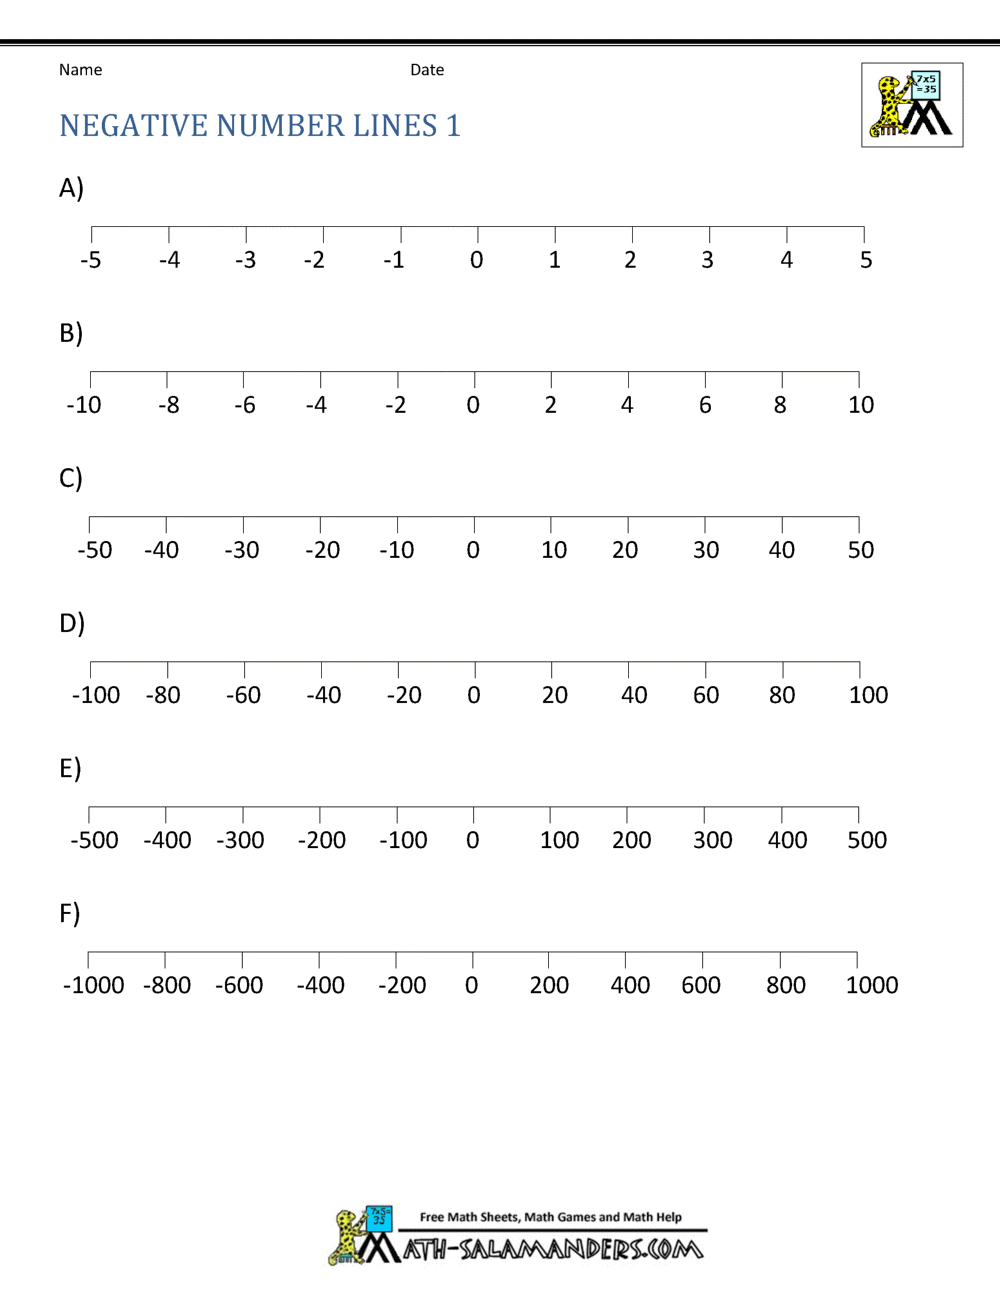 blank-number-line-negative-number-lines-1.gif